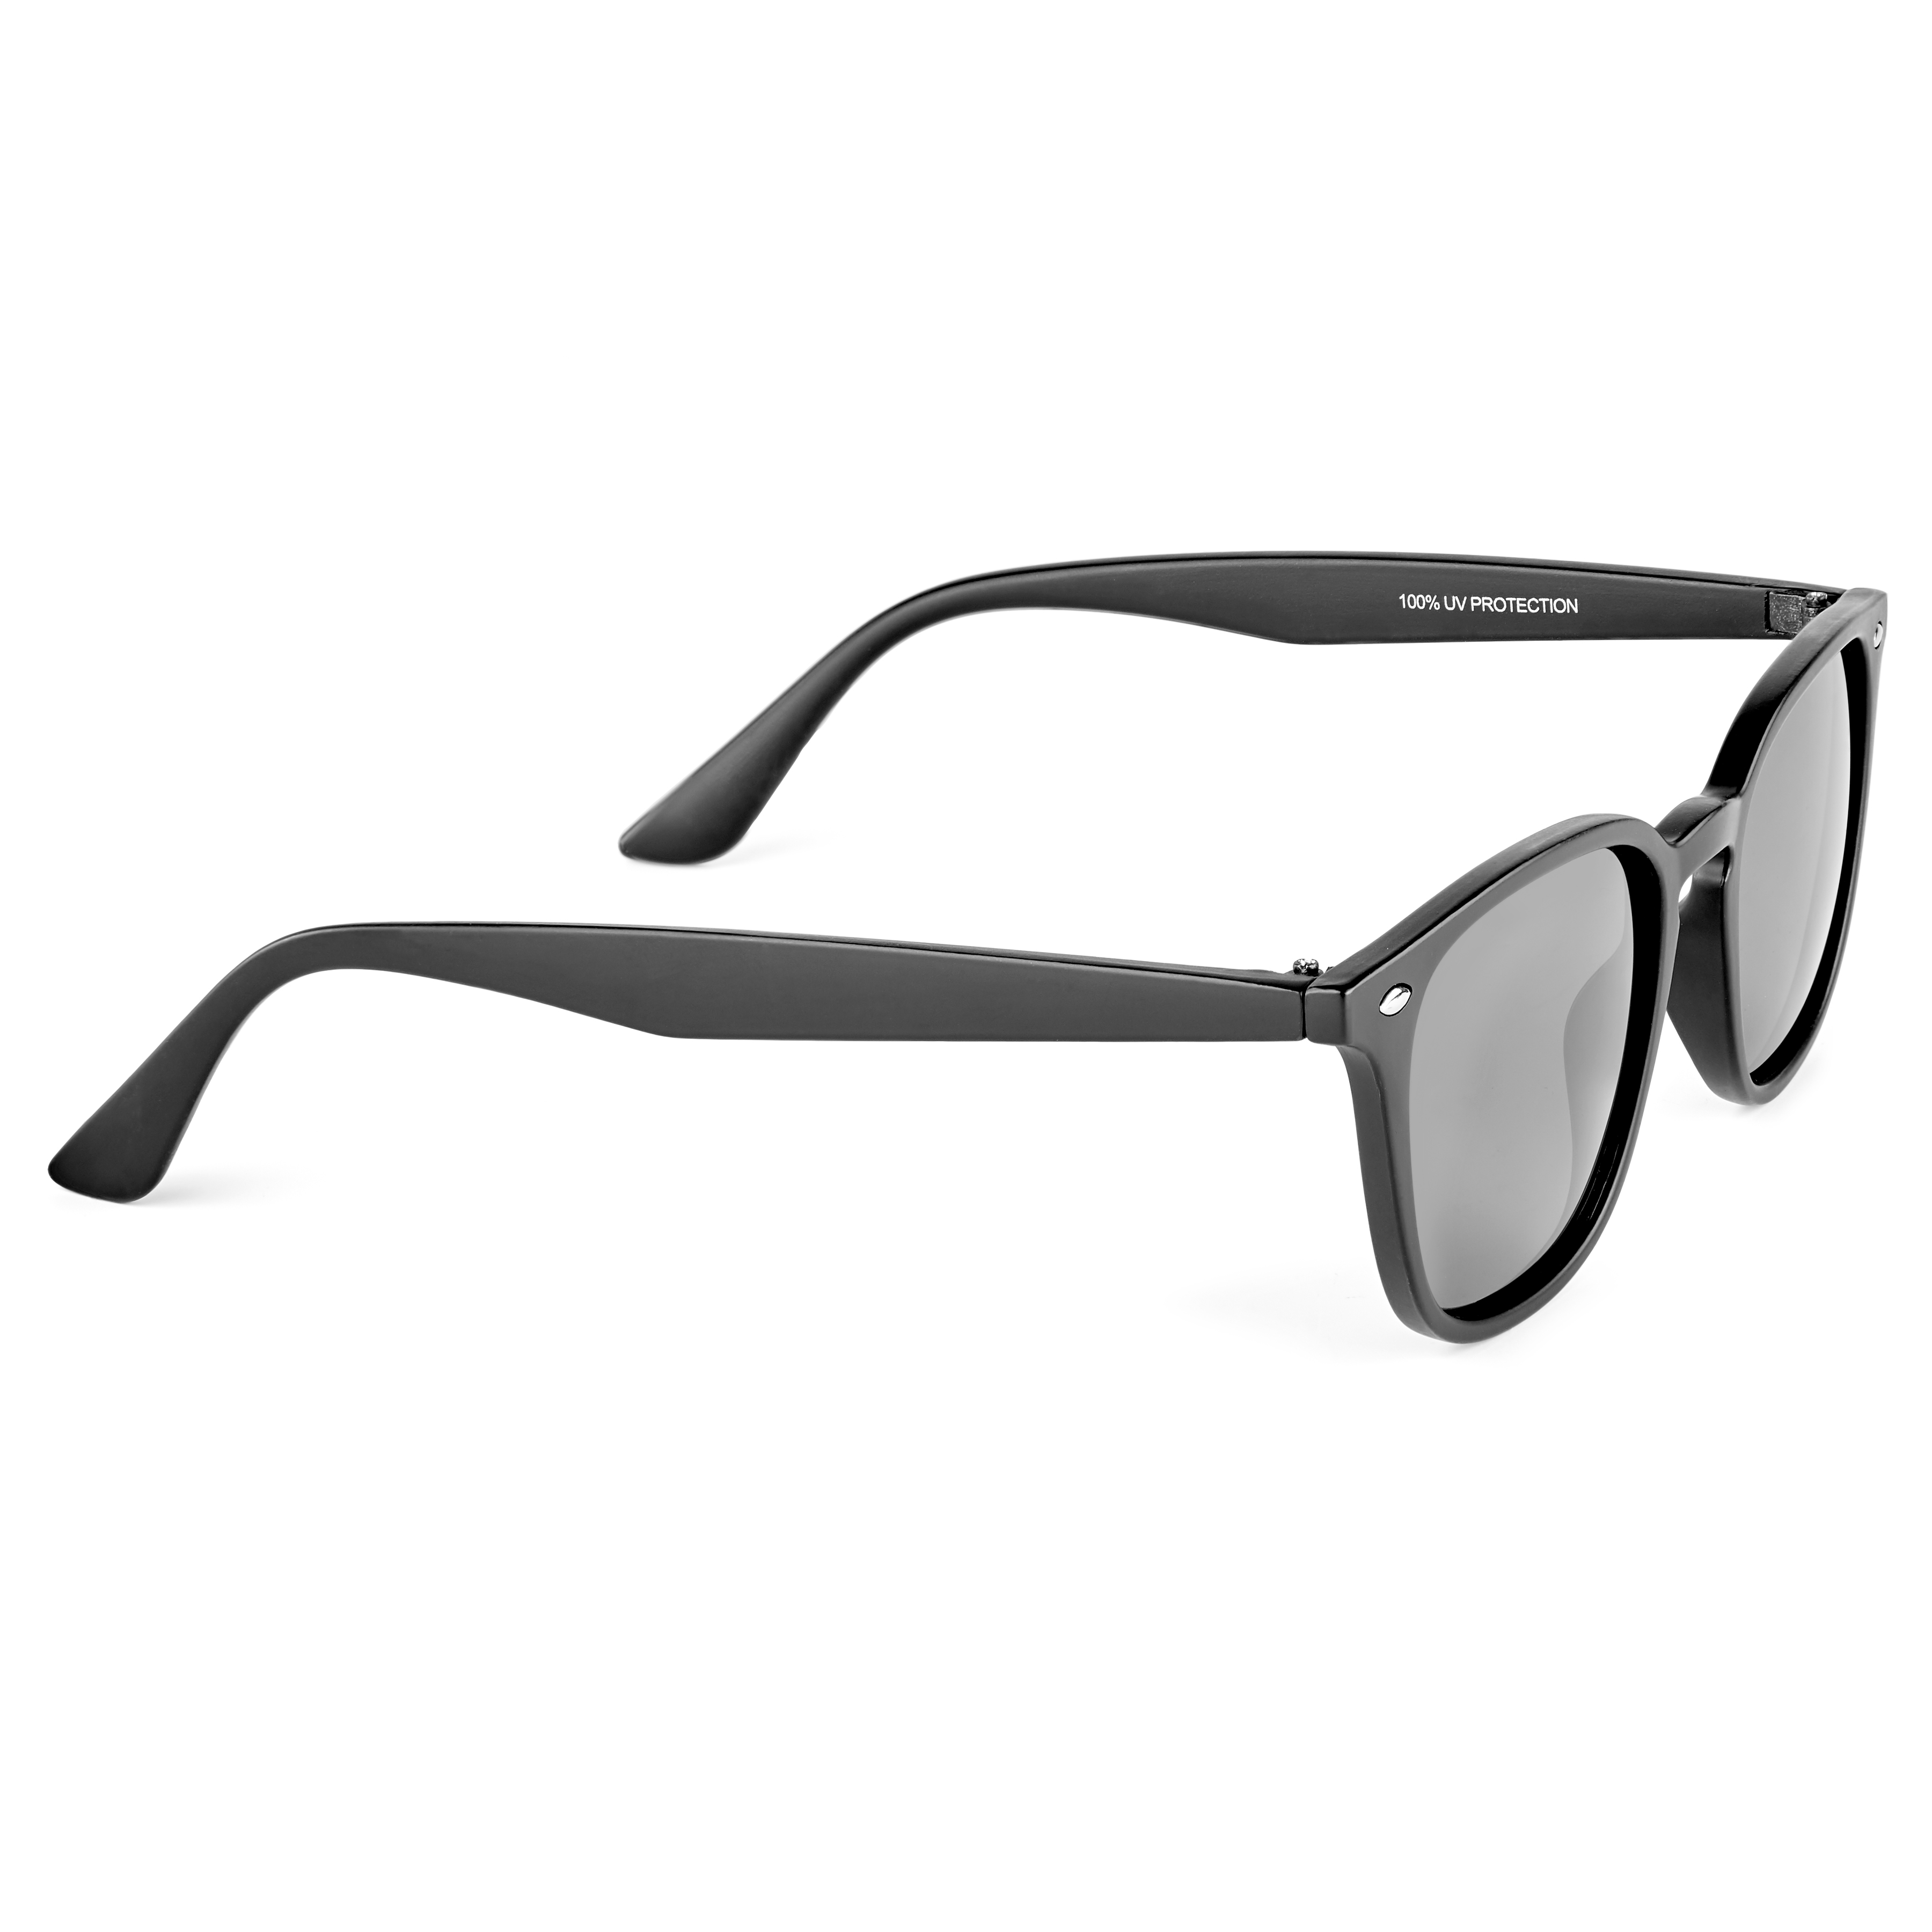 Polarized Floatable Nautical Eyewear with 100% UV Protection – Rheos